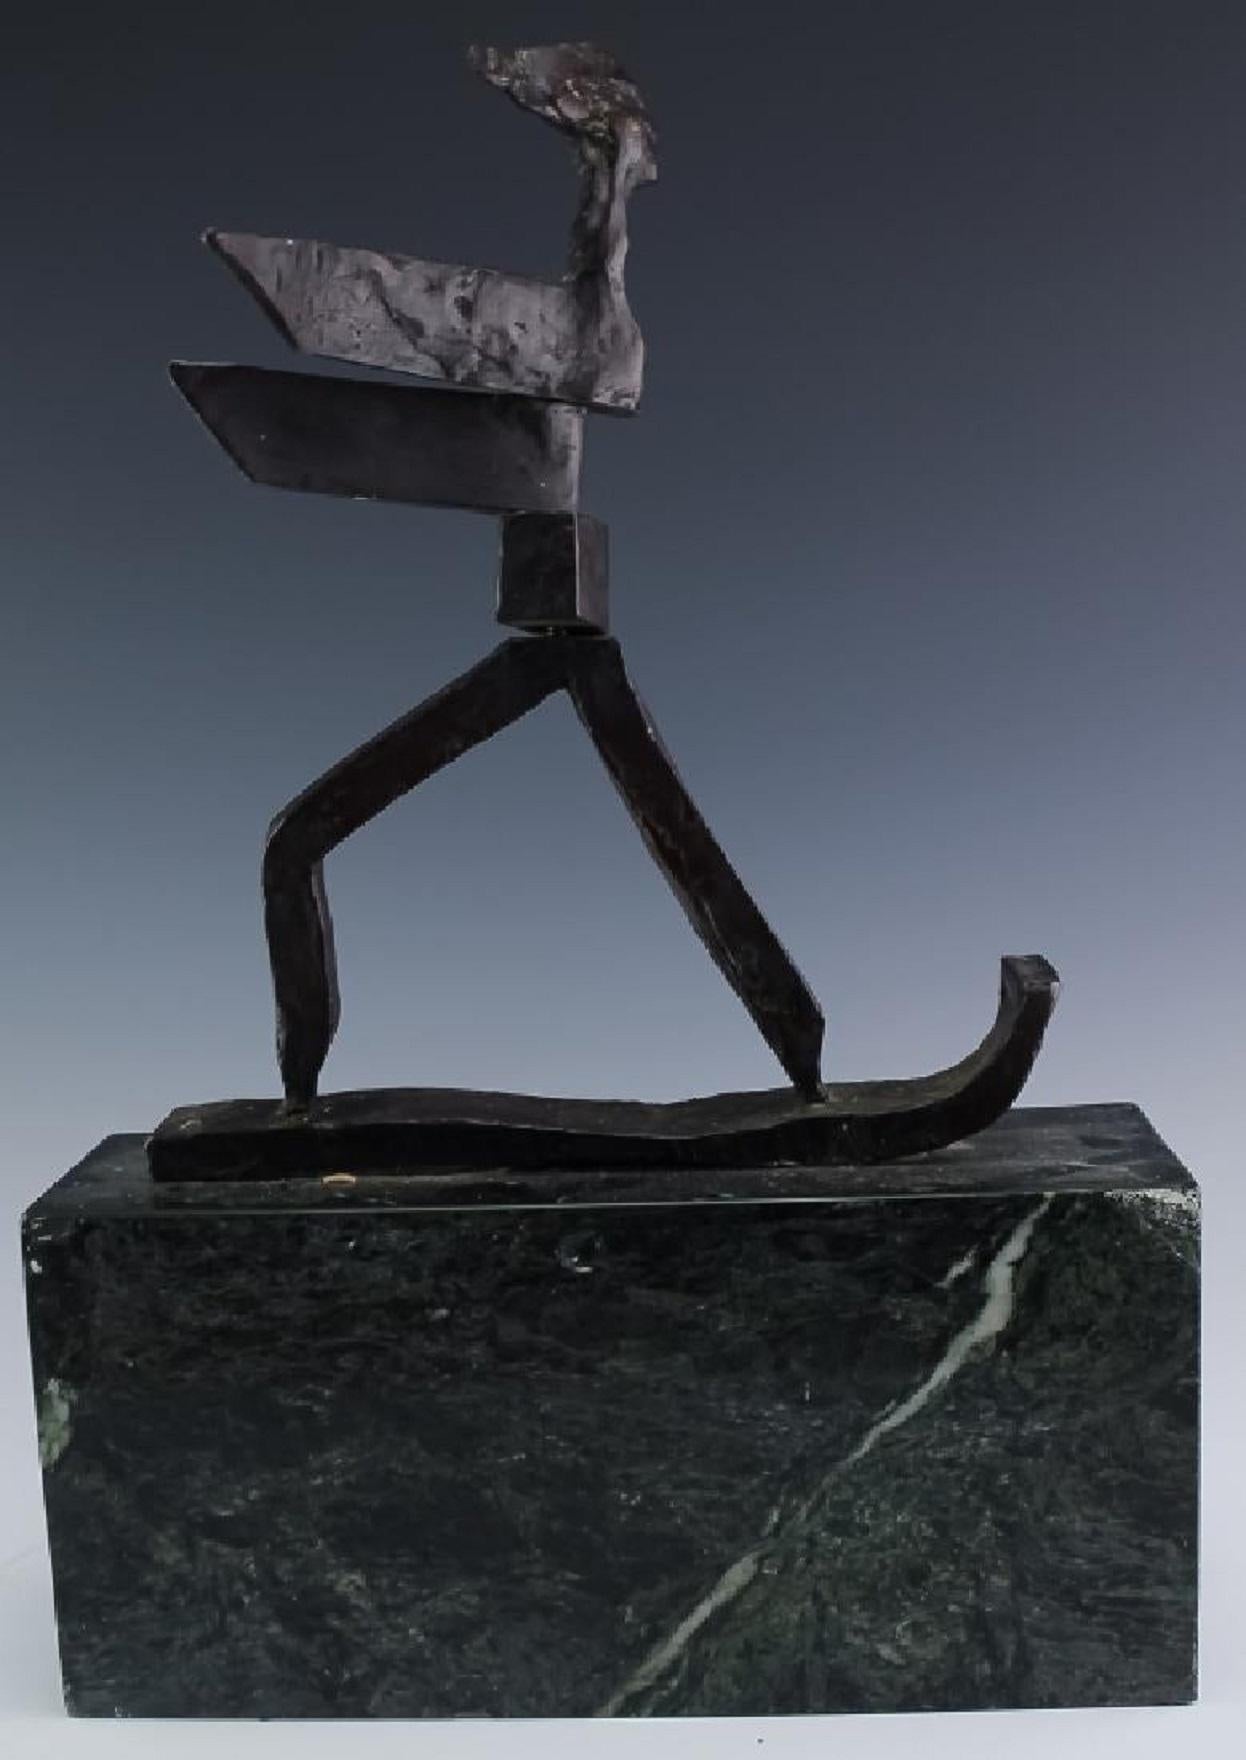 Kinetische expressionistische Bronze-Skulptur Skier oder Surfer Modernistische Sportfigur (Gold), Abstract Sculpture, von J. James Akston